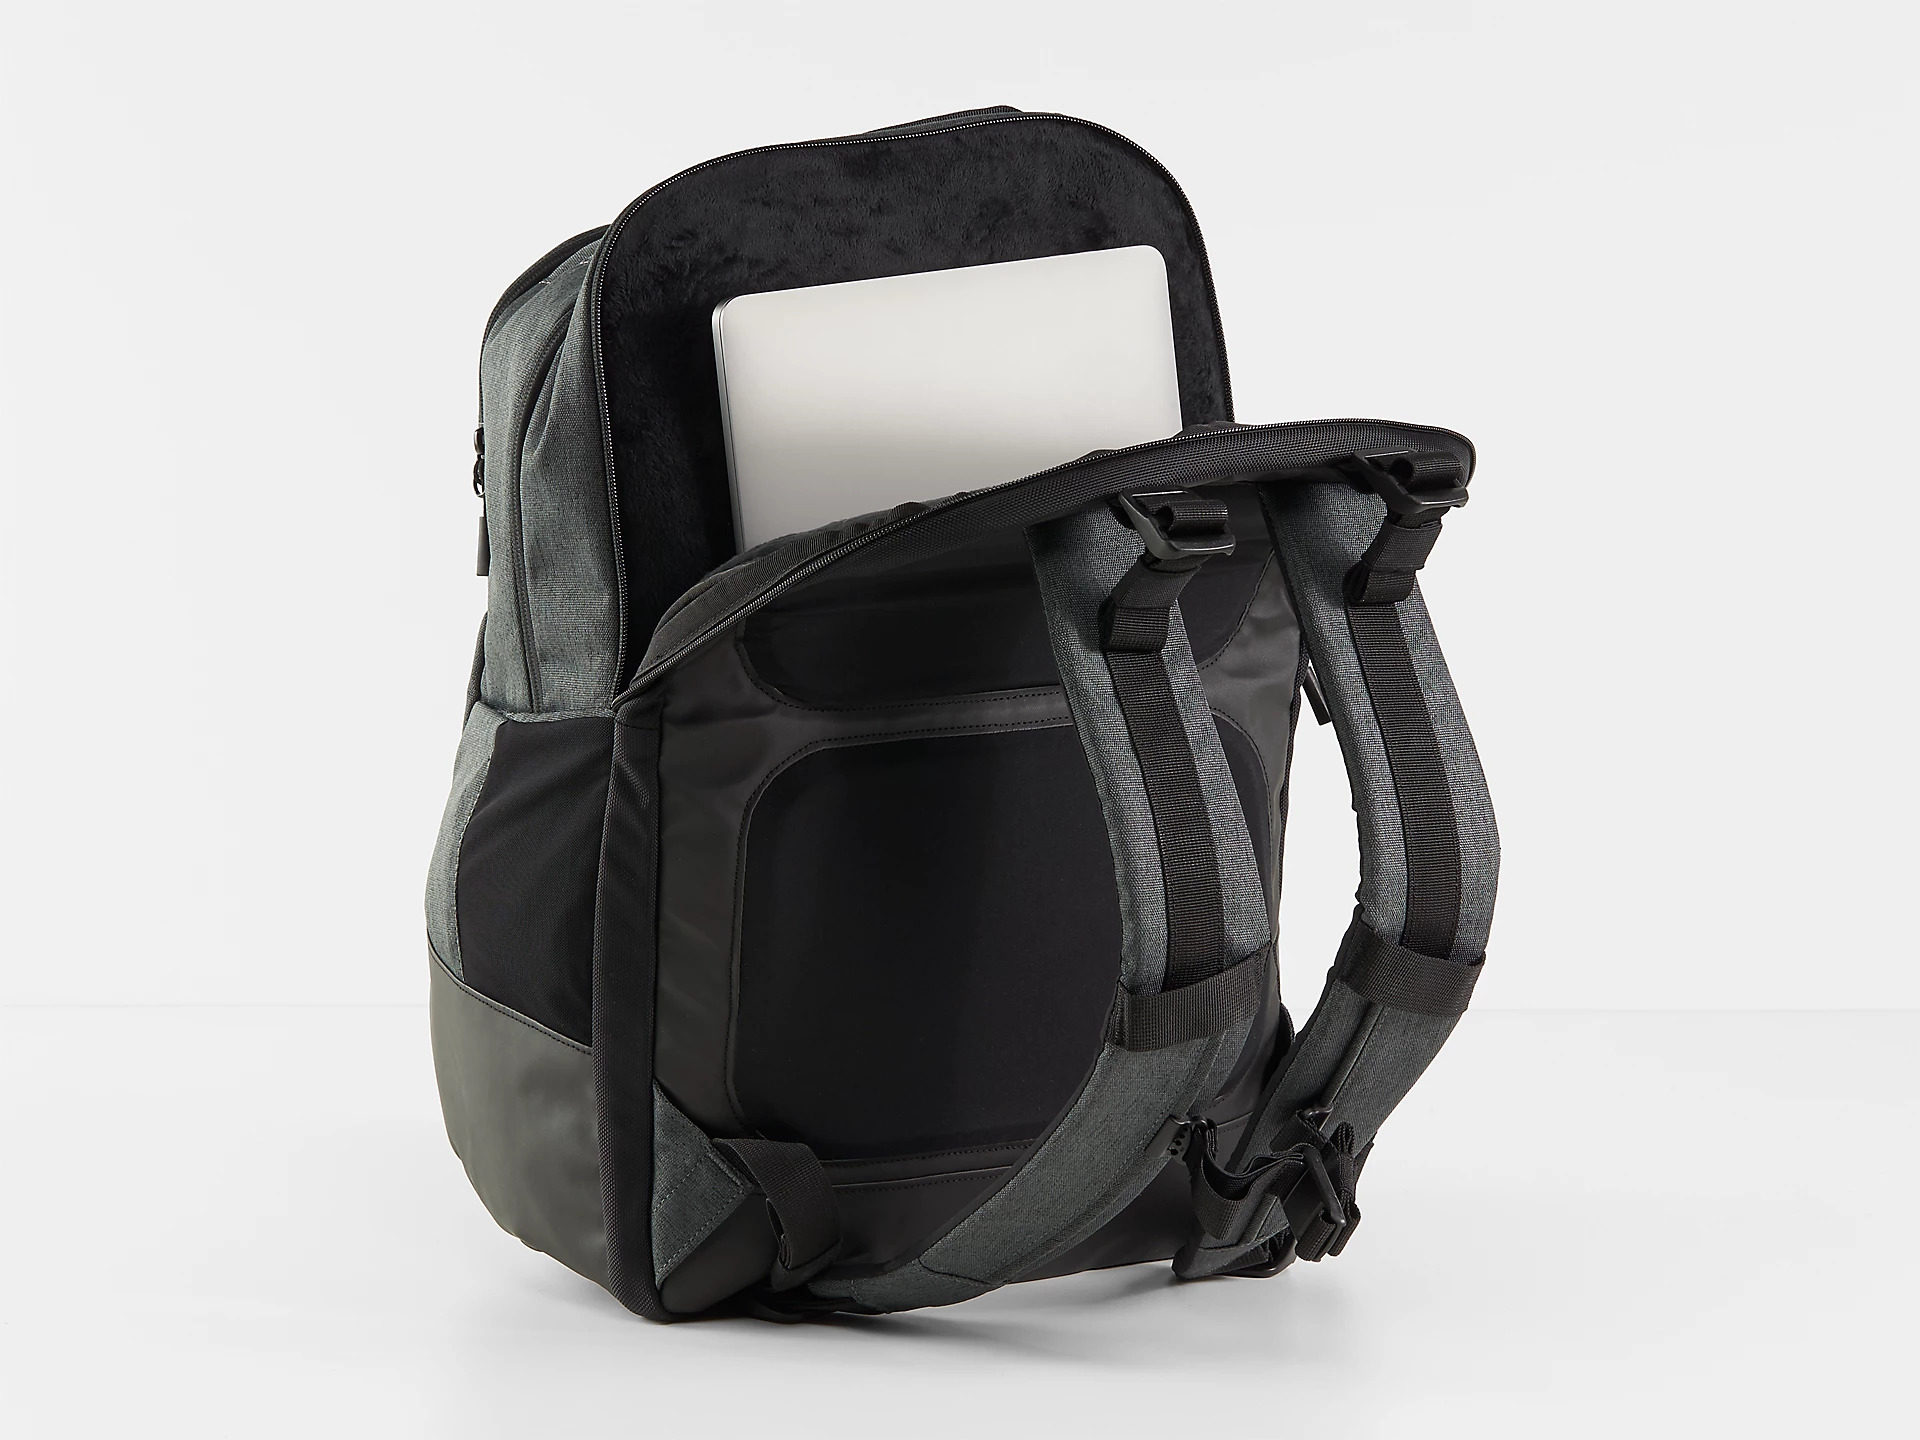 ボントレガーの新型バックパック「Commuter&Travel Backpack」登場 